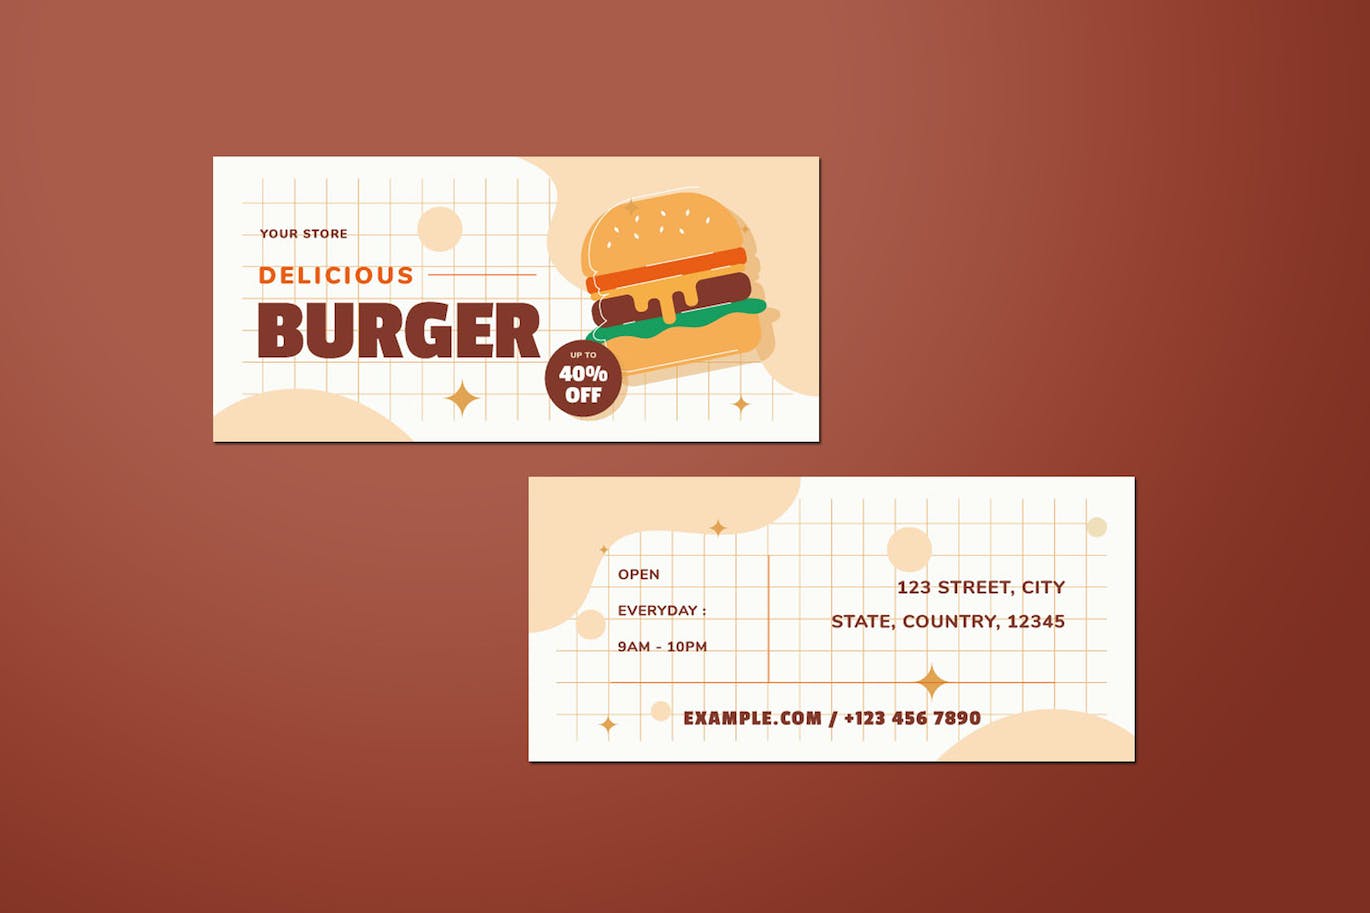 汉堡销售DL传单设计模板 Burger Sale DL Flyer 设计素材 第3张